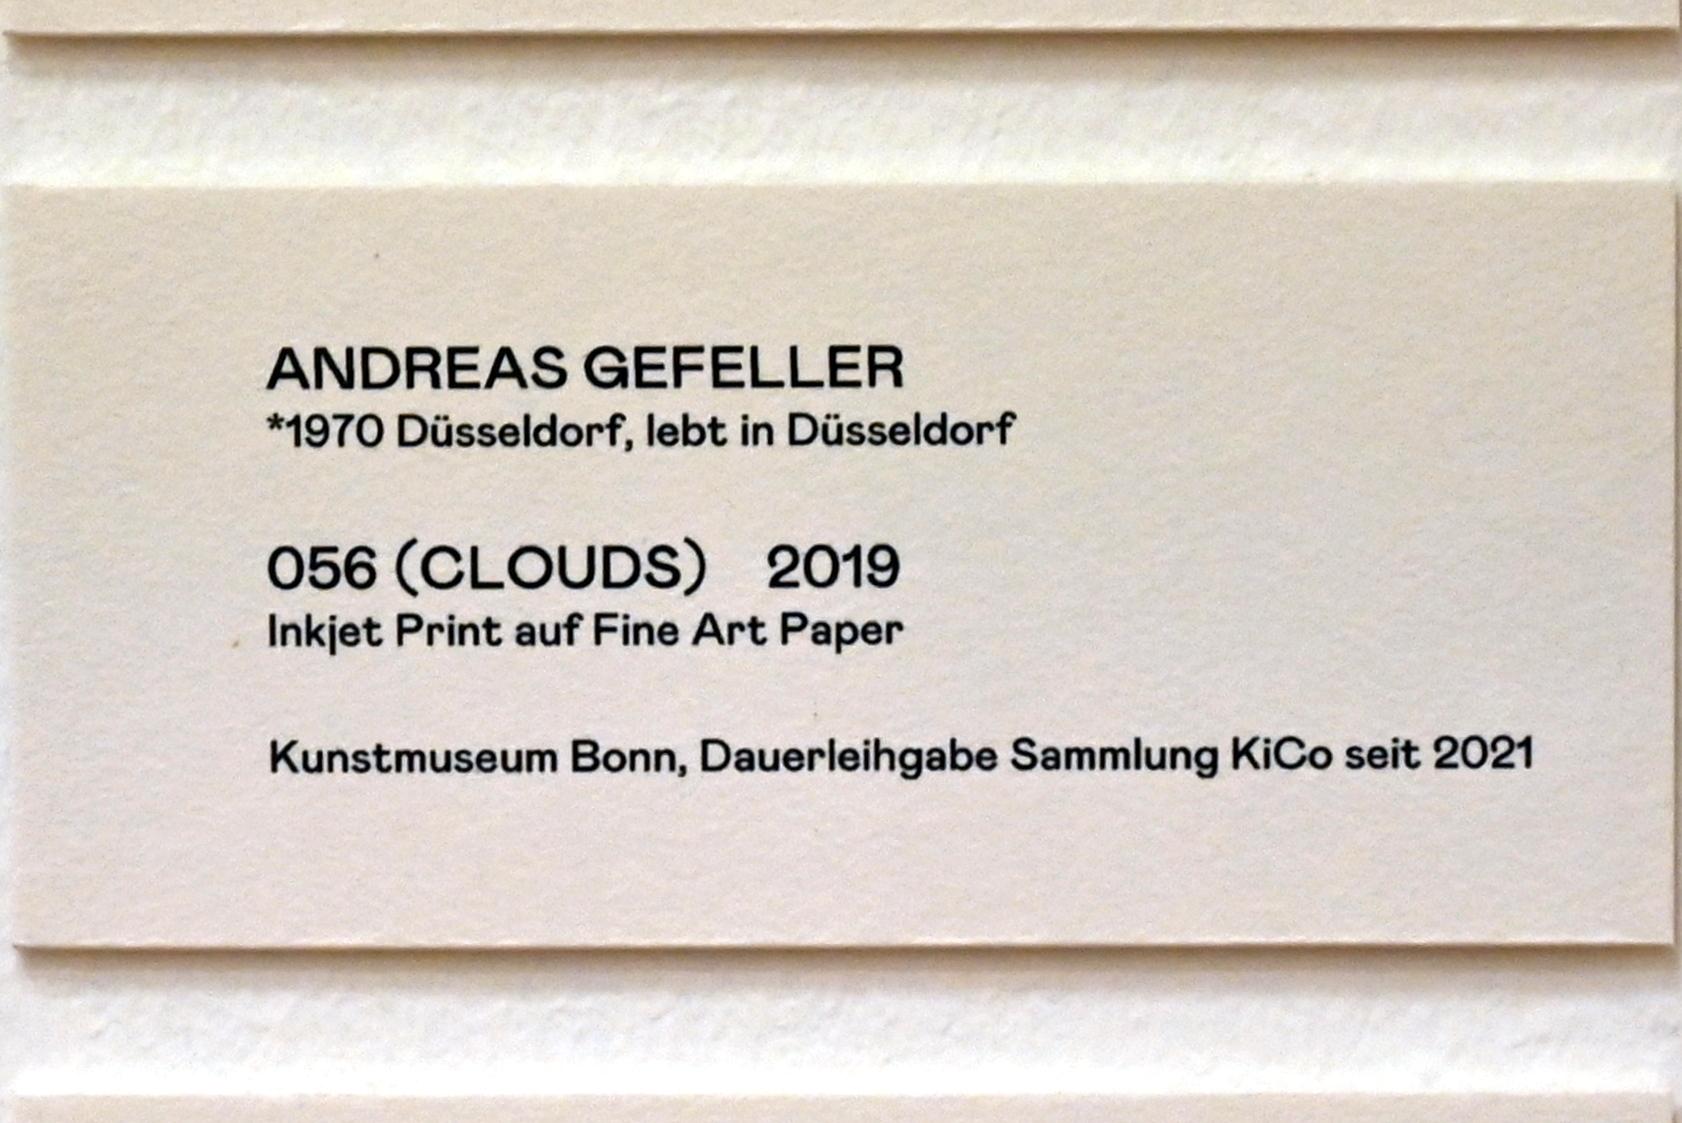 Andreas Gefeller (2019), 056 (Clouds), Bonn, Kunstmuseum, Ausstellung "Welt in der Schwebe" vom 24.02. - 19.06.2022, Saal 6, 2019, Bild 2/2